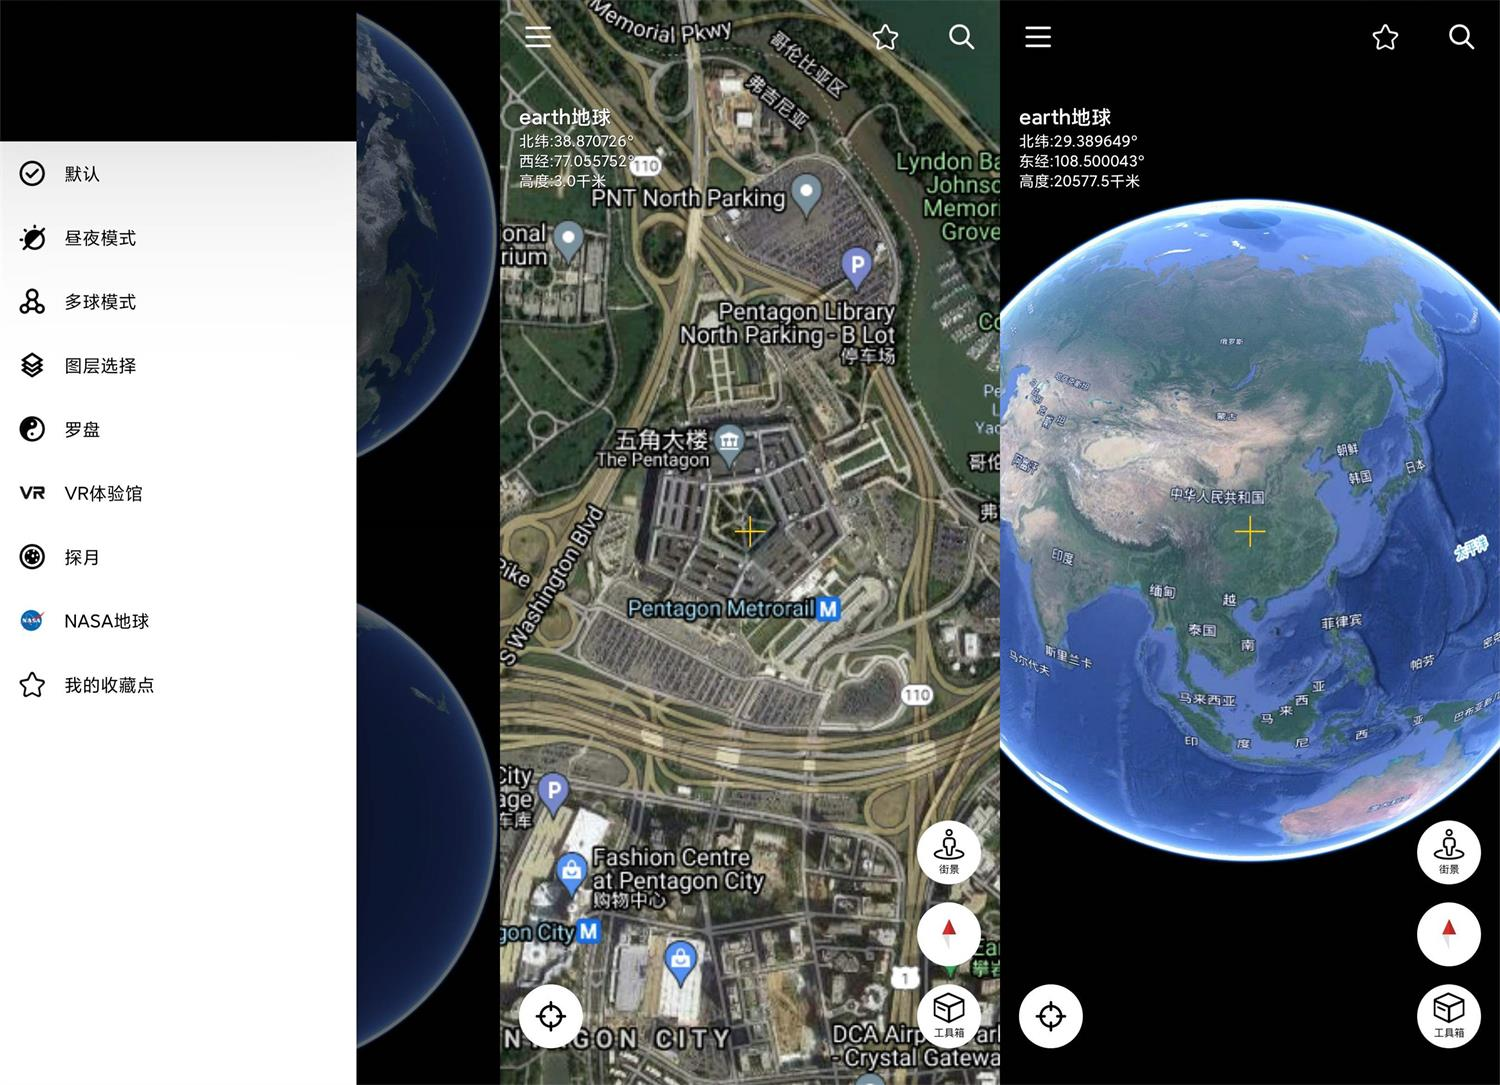 
安卓谷歌地球v9.162.0.2绿化版/强大功能让你探索世界更细致
-安生子-AnSheng
-第1
张图片